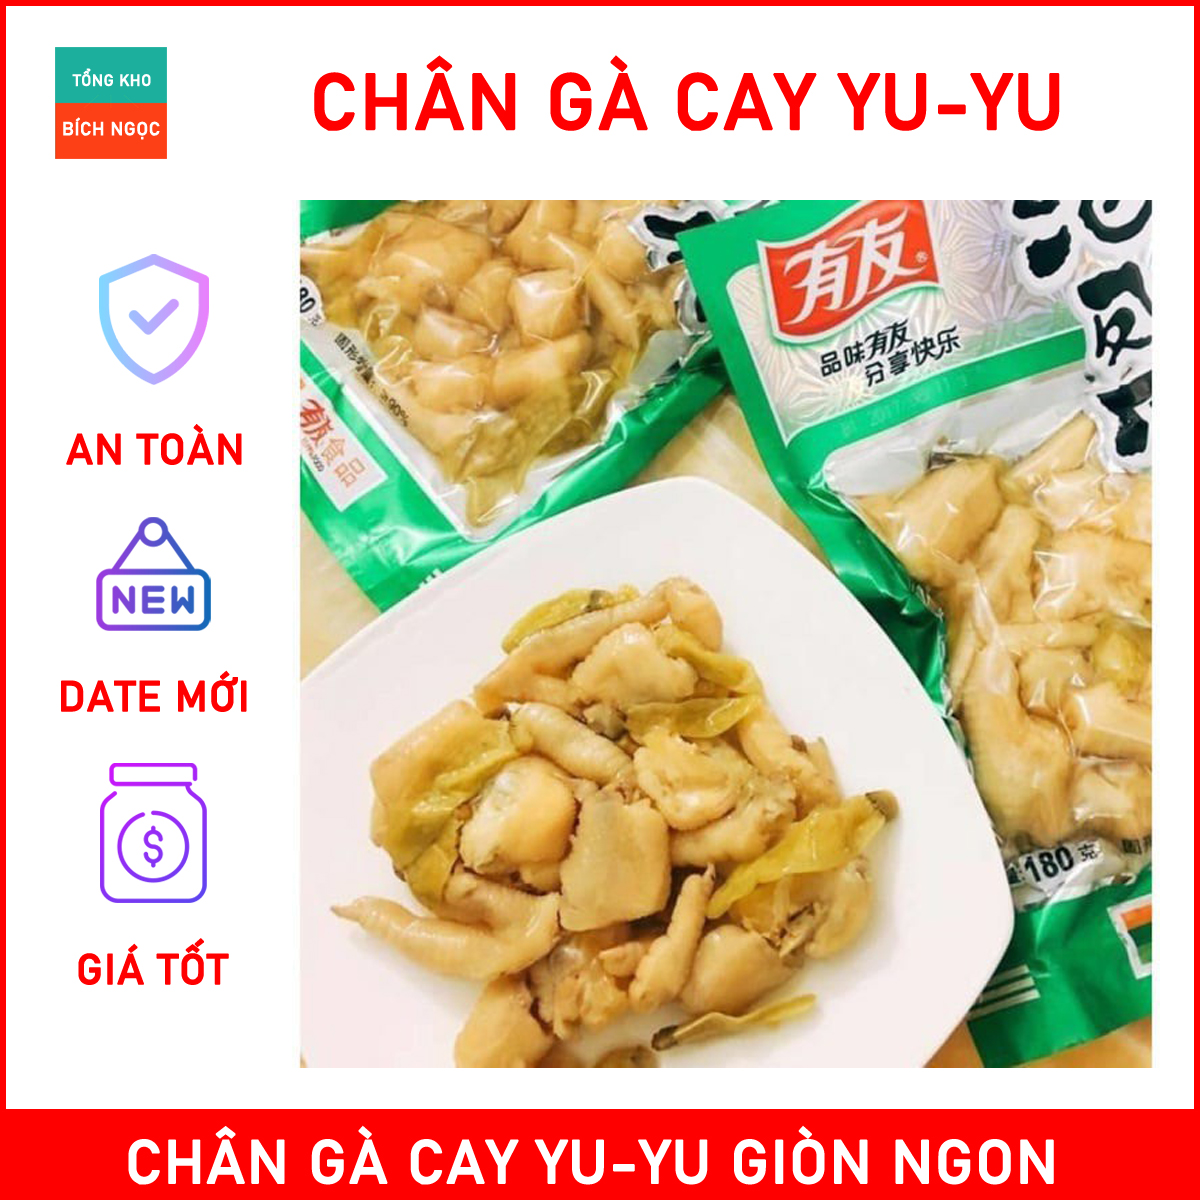 Gói chân gà cay Yuyu - đồ ăn vặt nội địa Trung